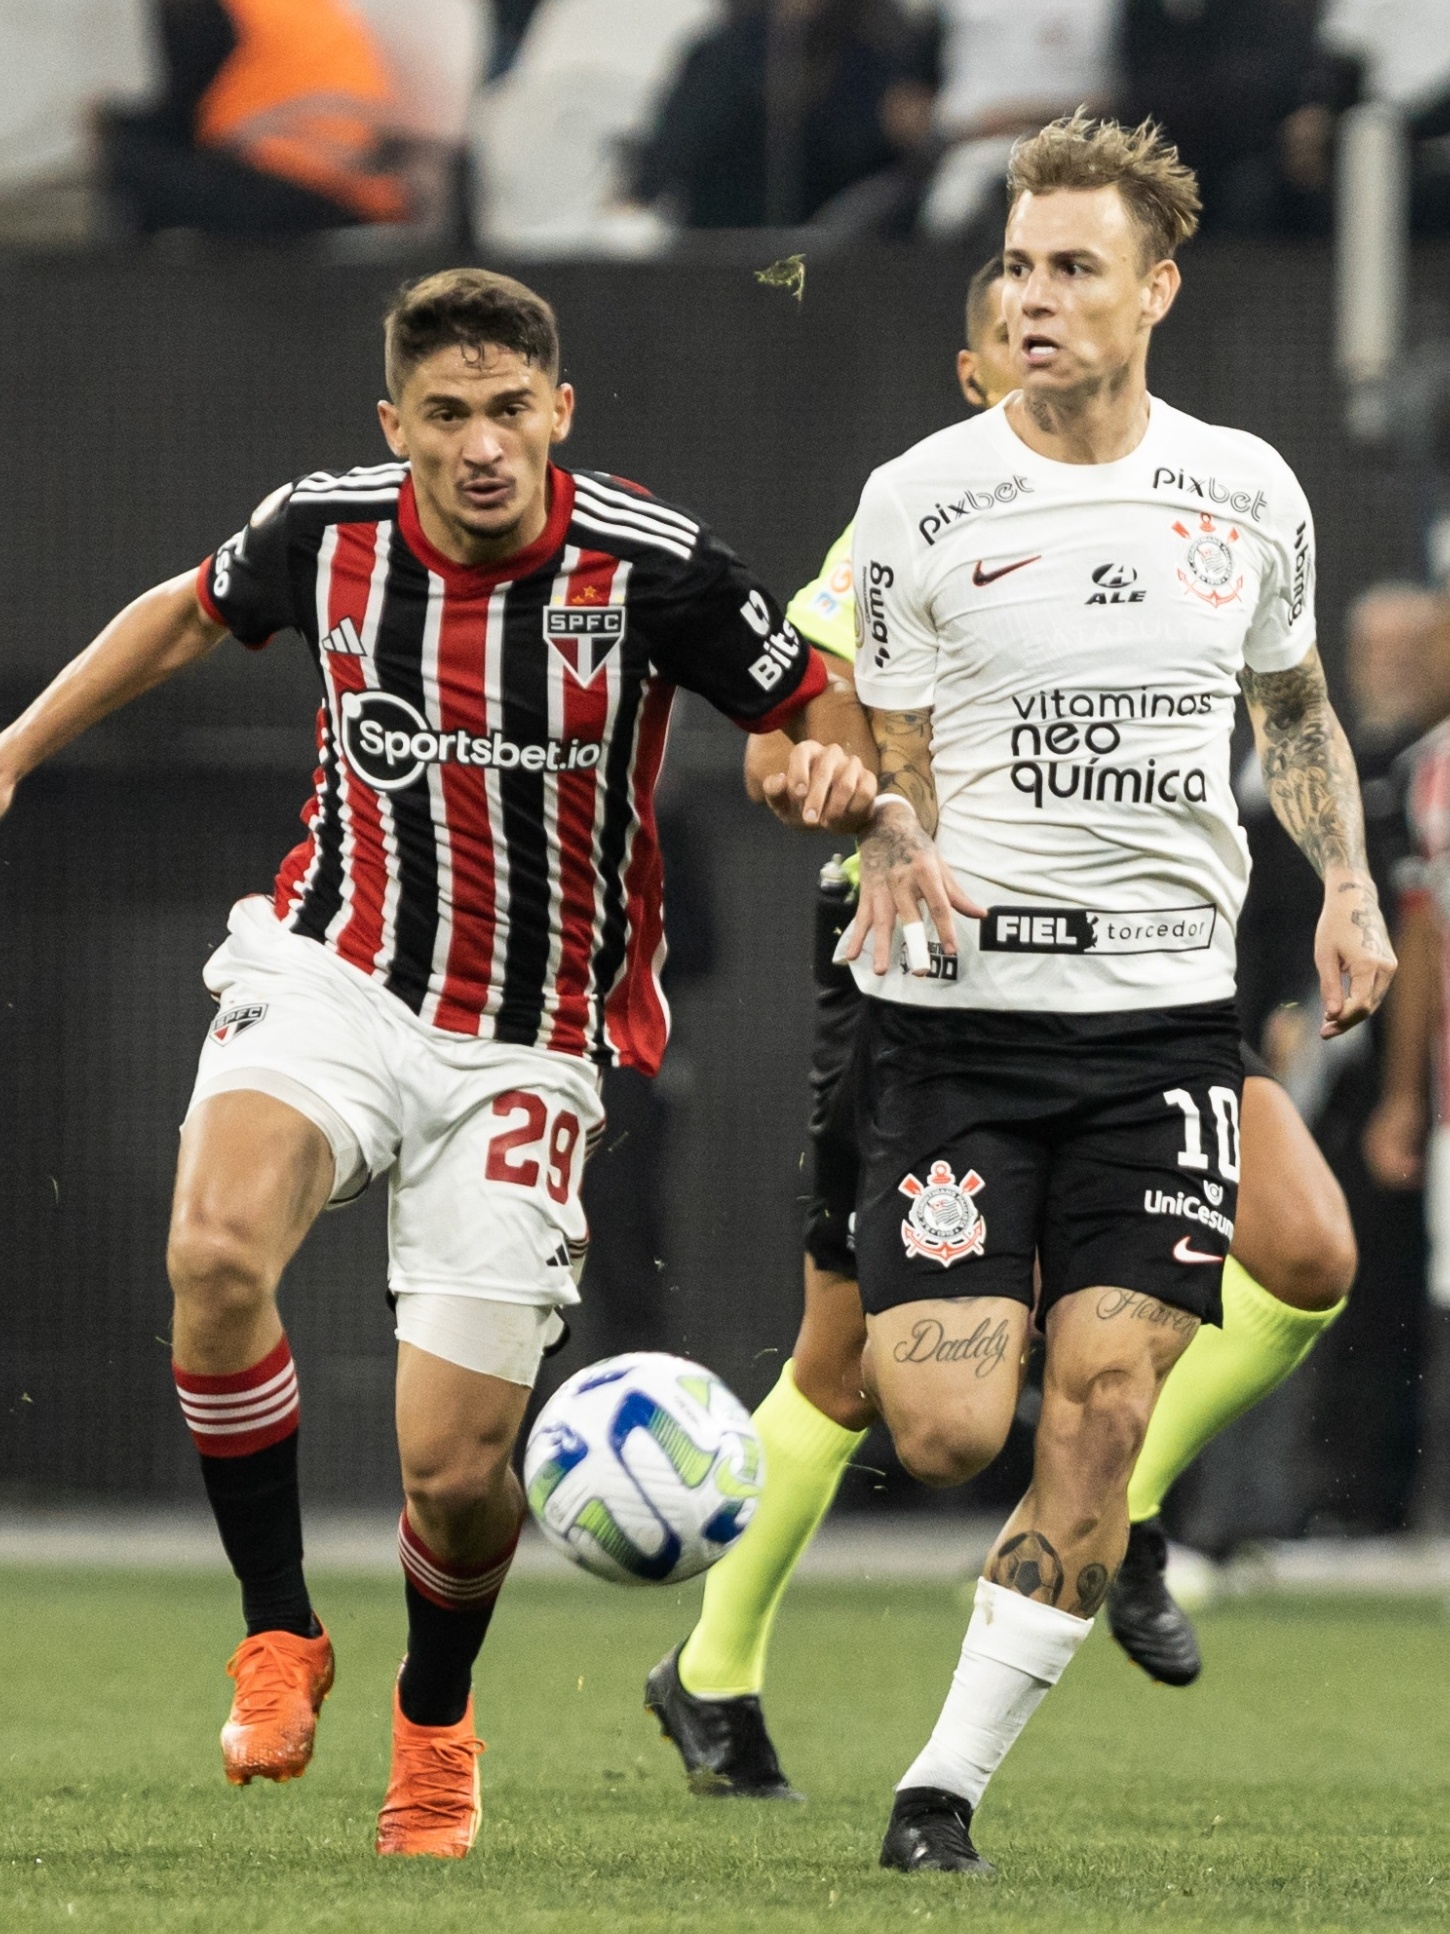 São Paulo x Corinthians online e com imagens: onde assistir